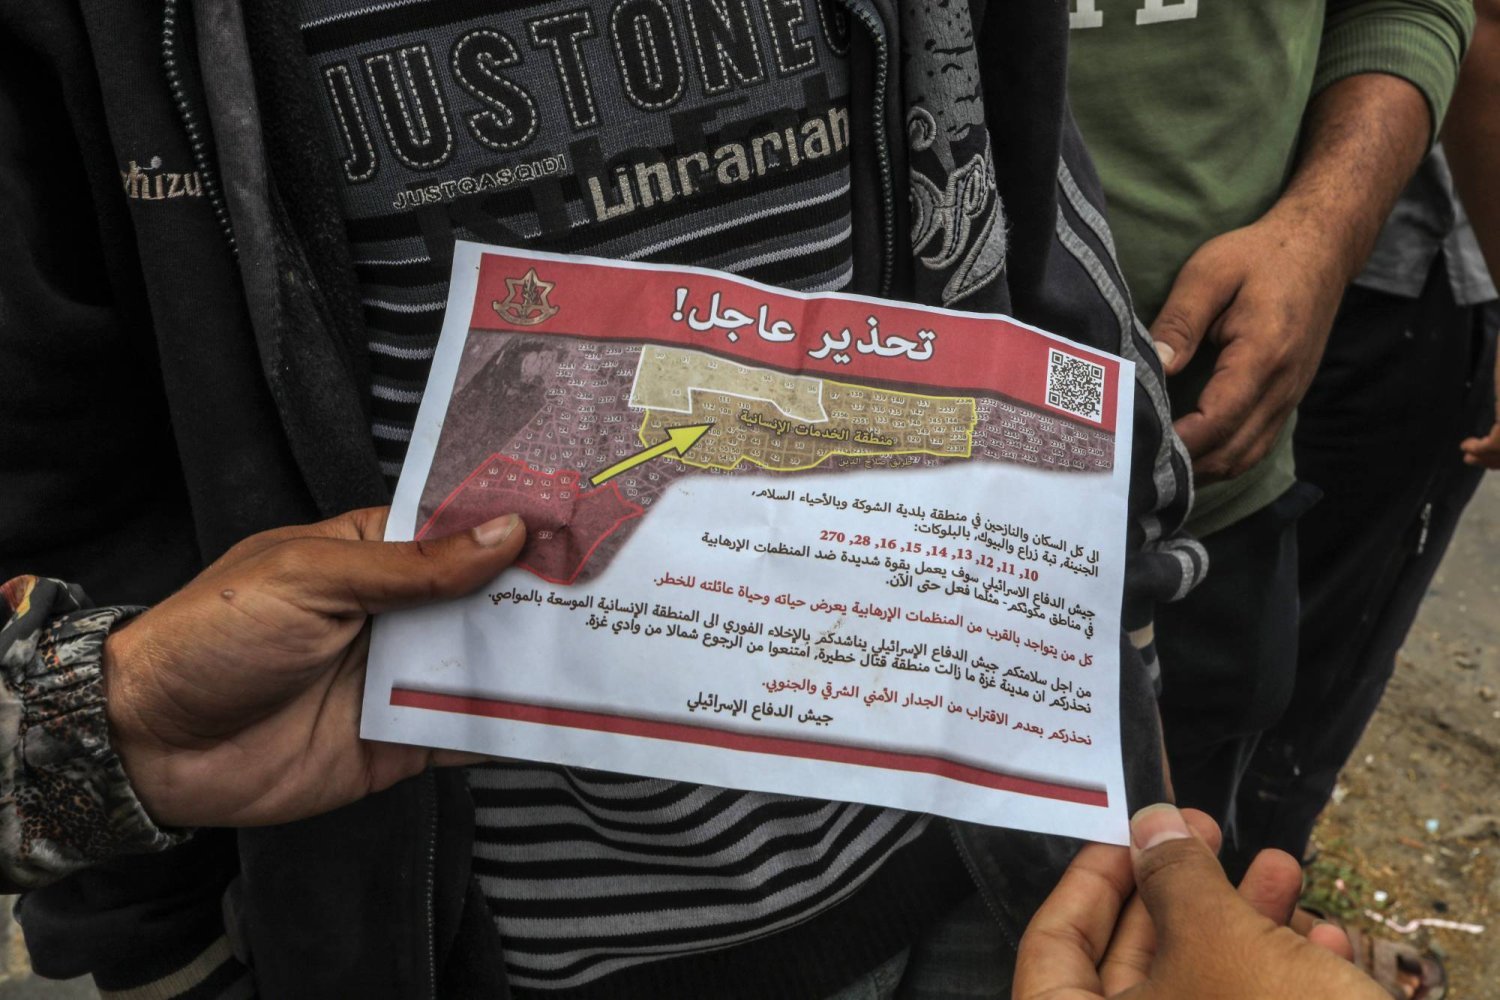  İsrail uçakları, Doğu Refah'ta yaşayanların tahliye edilmesini talep eden broşürler attı (DPA)